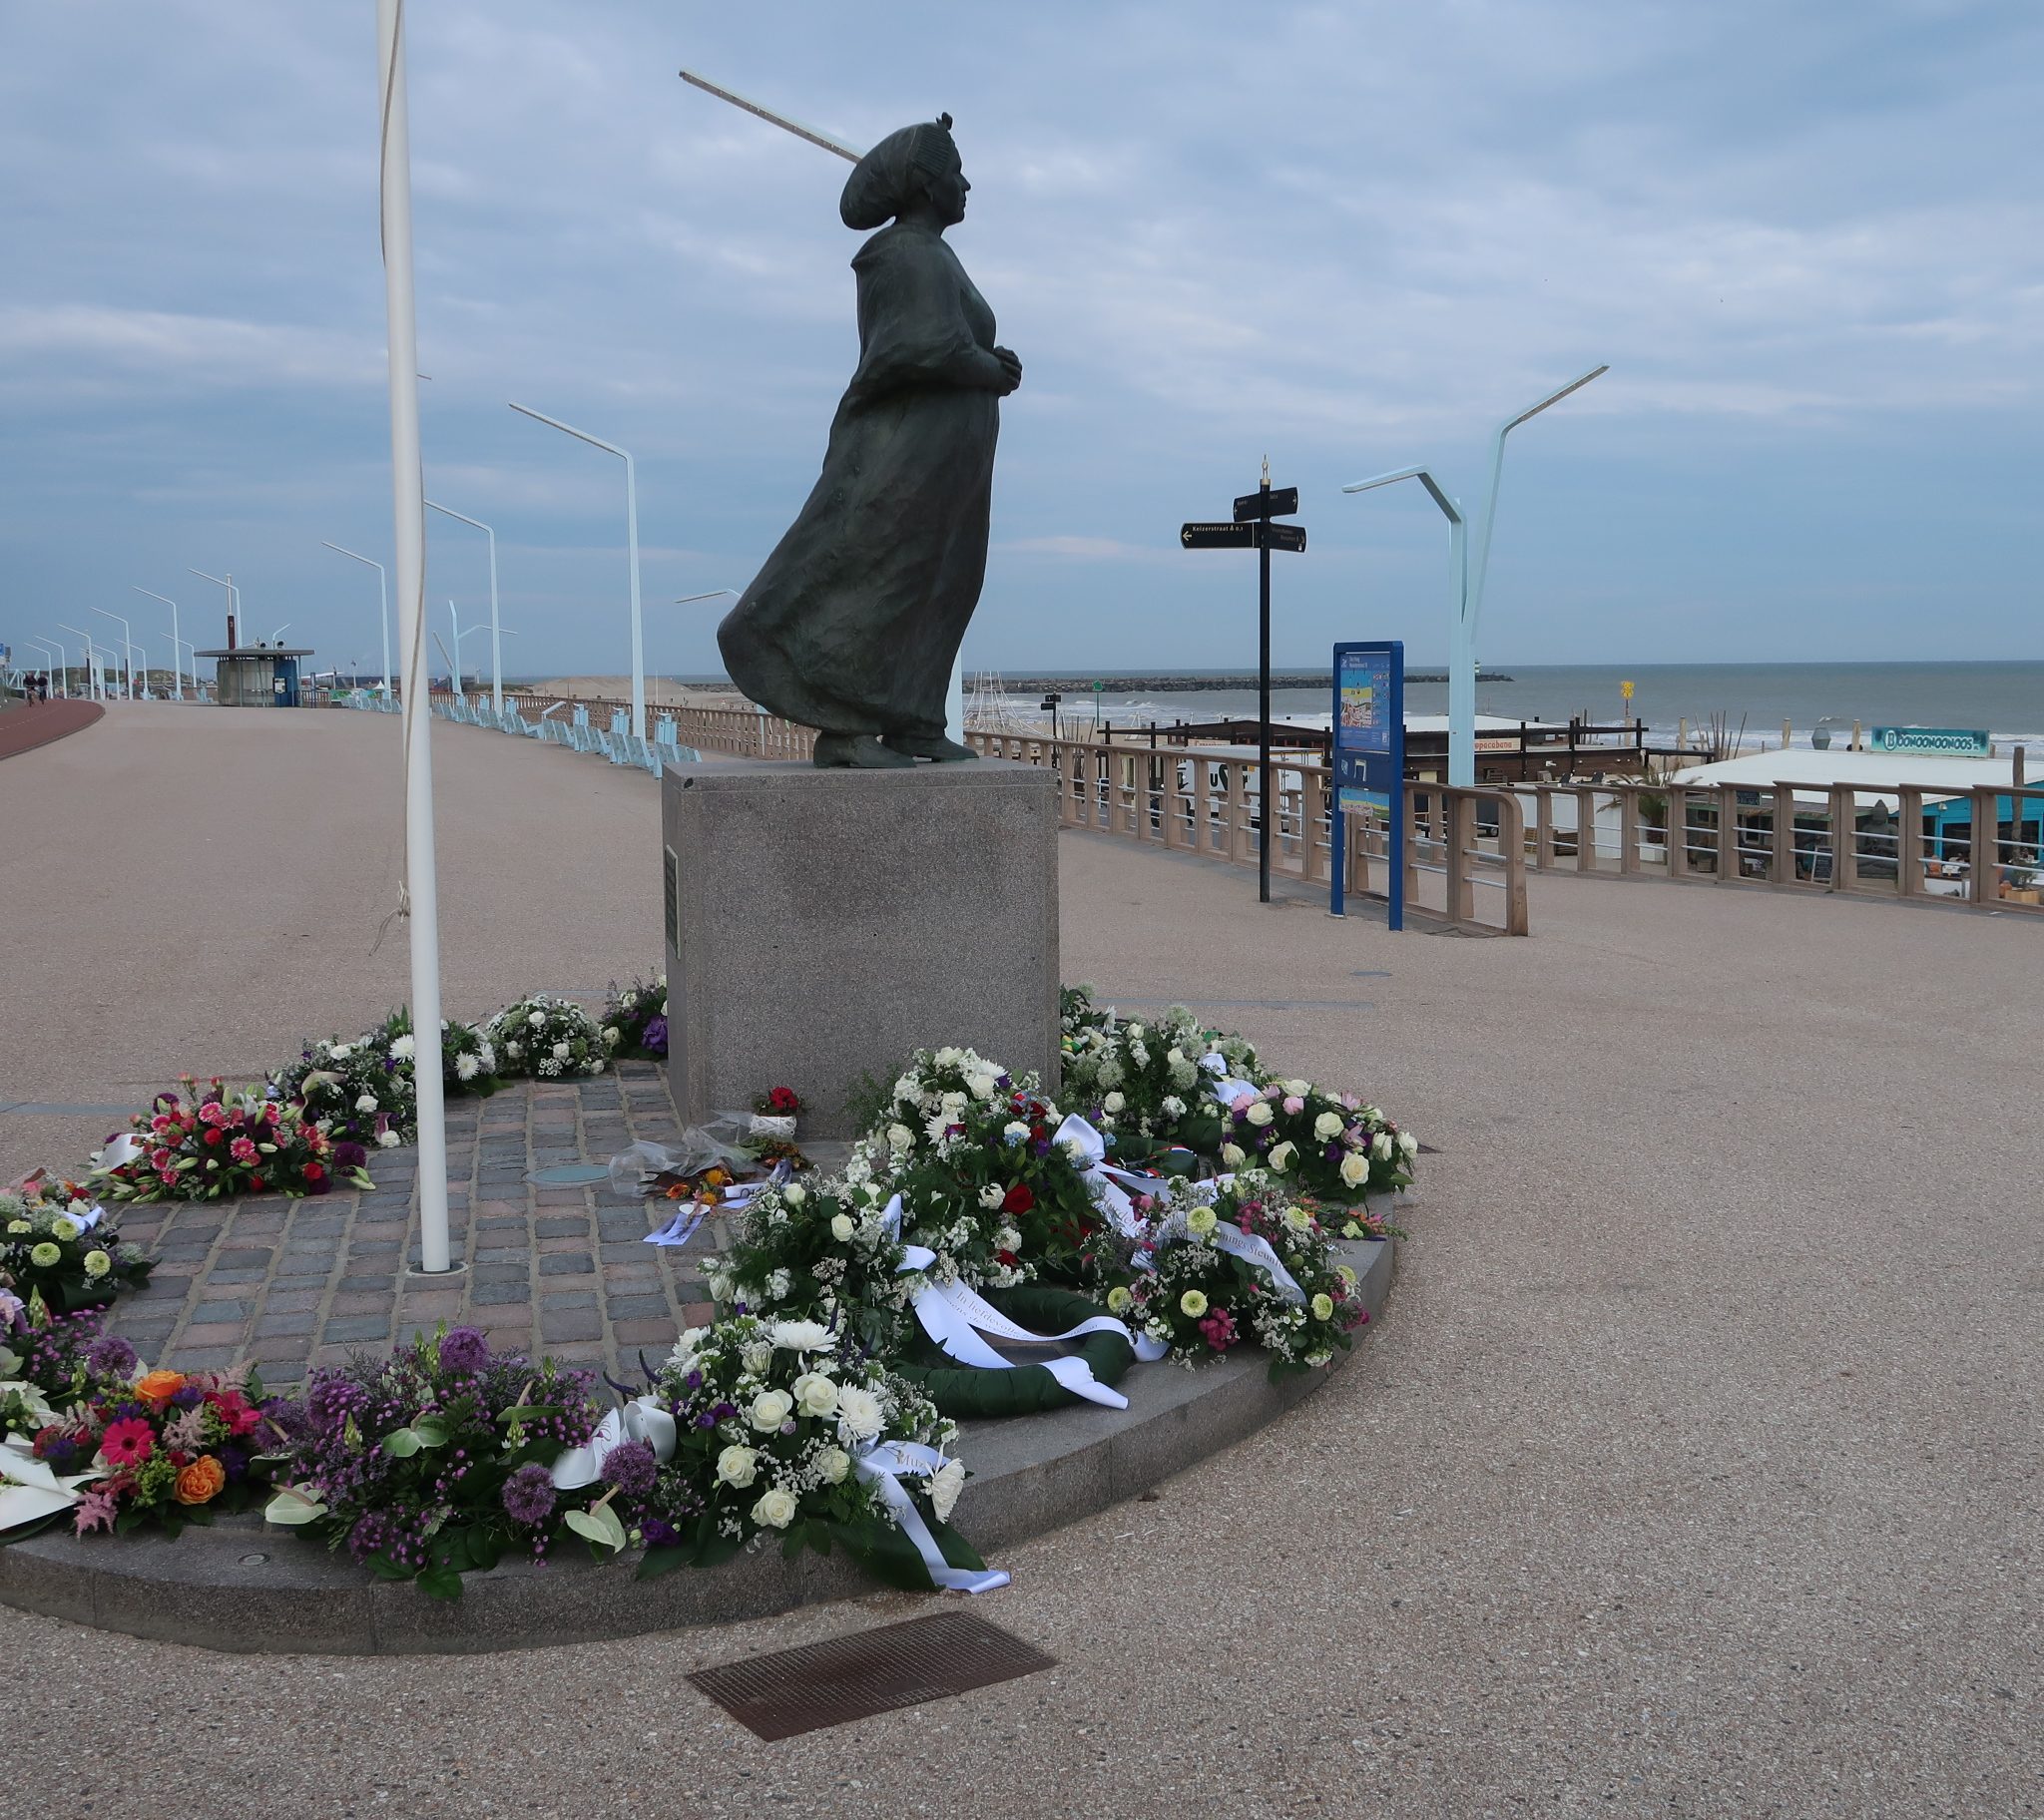 Bloemenkransen rondom het monument van de Scheveningse vissersvrouw die uitkijkt over zee. (Foto W.M. den Heijer)